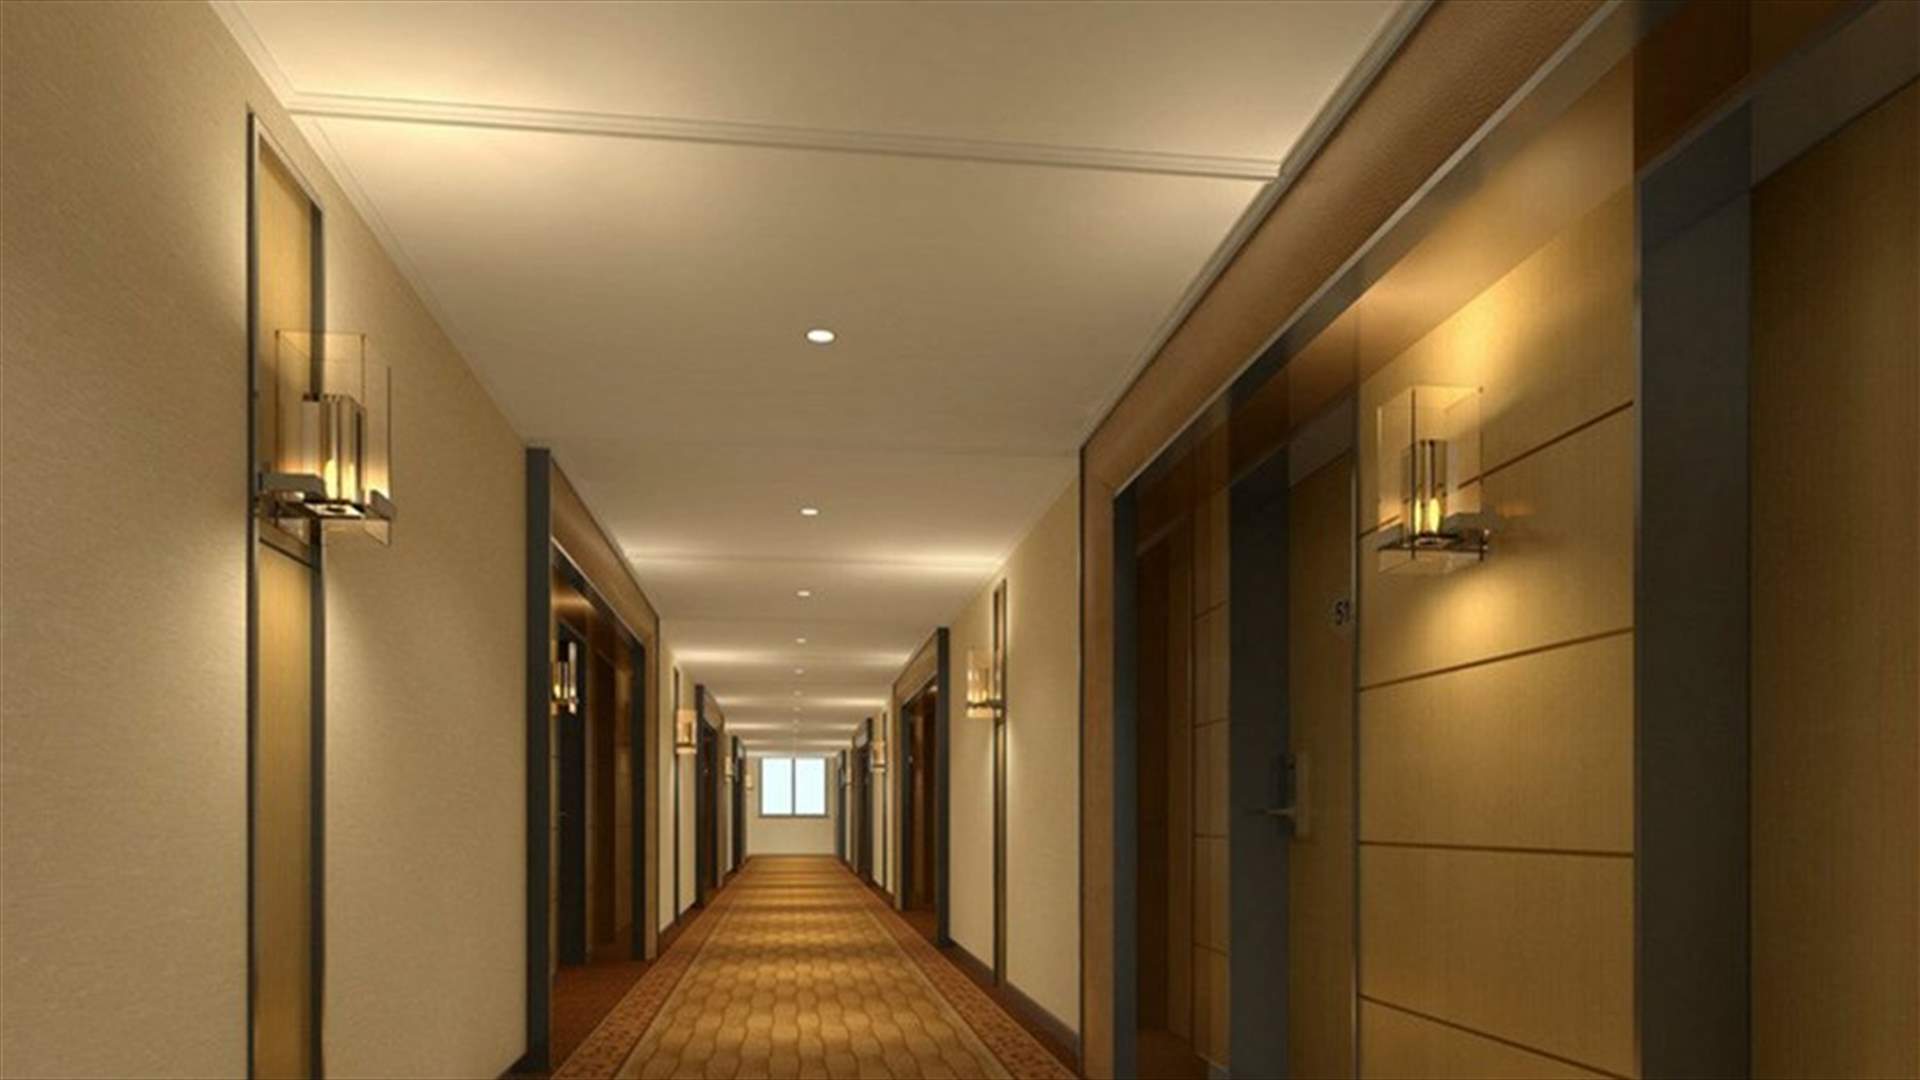 قصة الغرفة 1010 في فندق في ميامي... ماذا فعل سعودي داخلها؟